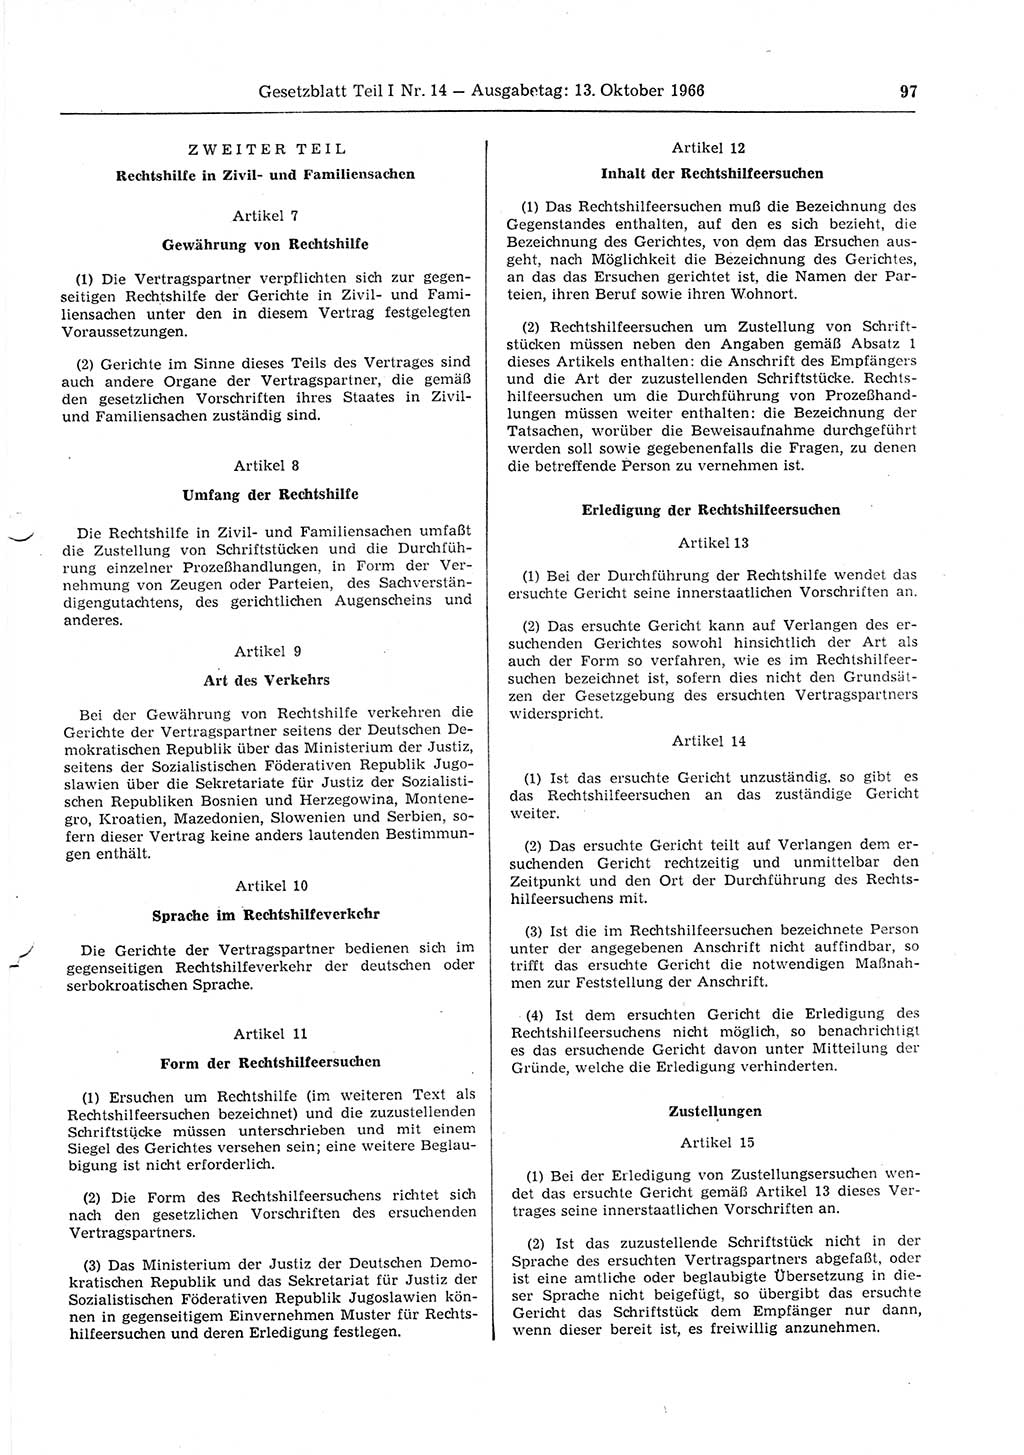 Gesetzblatt (GBl.) der Deutschen Demokratischen Republik (DDR) Teil Ⅰ 1966, Seite 97 (GBl. DDR Ⅰ 1966, S. 97)